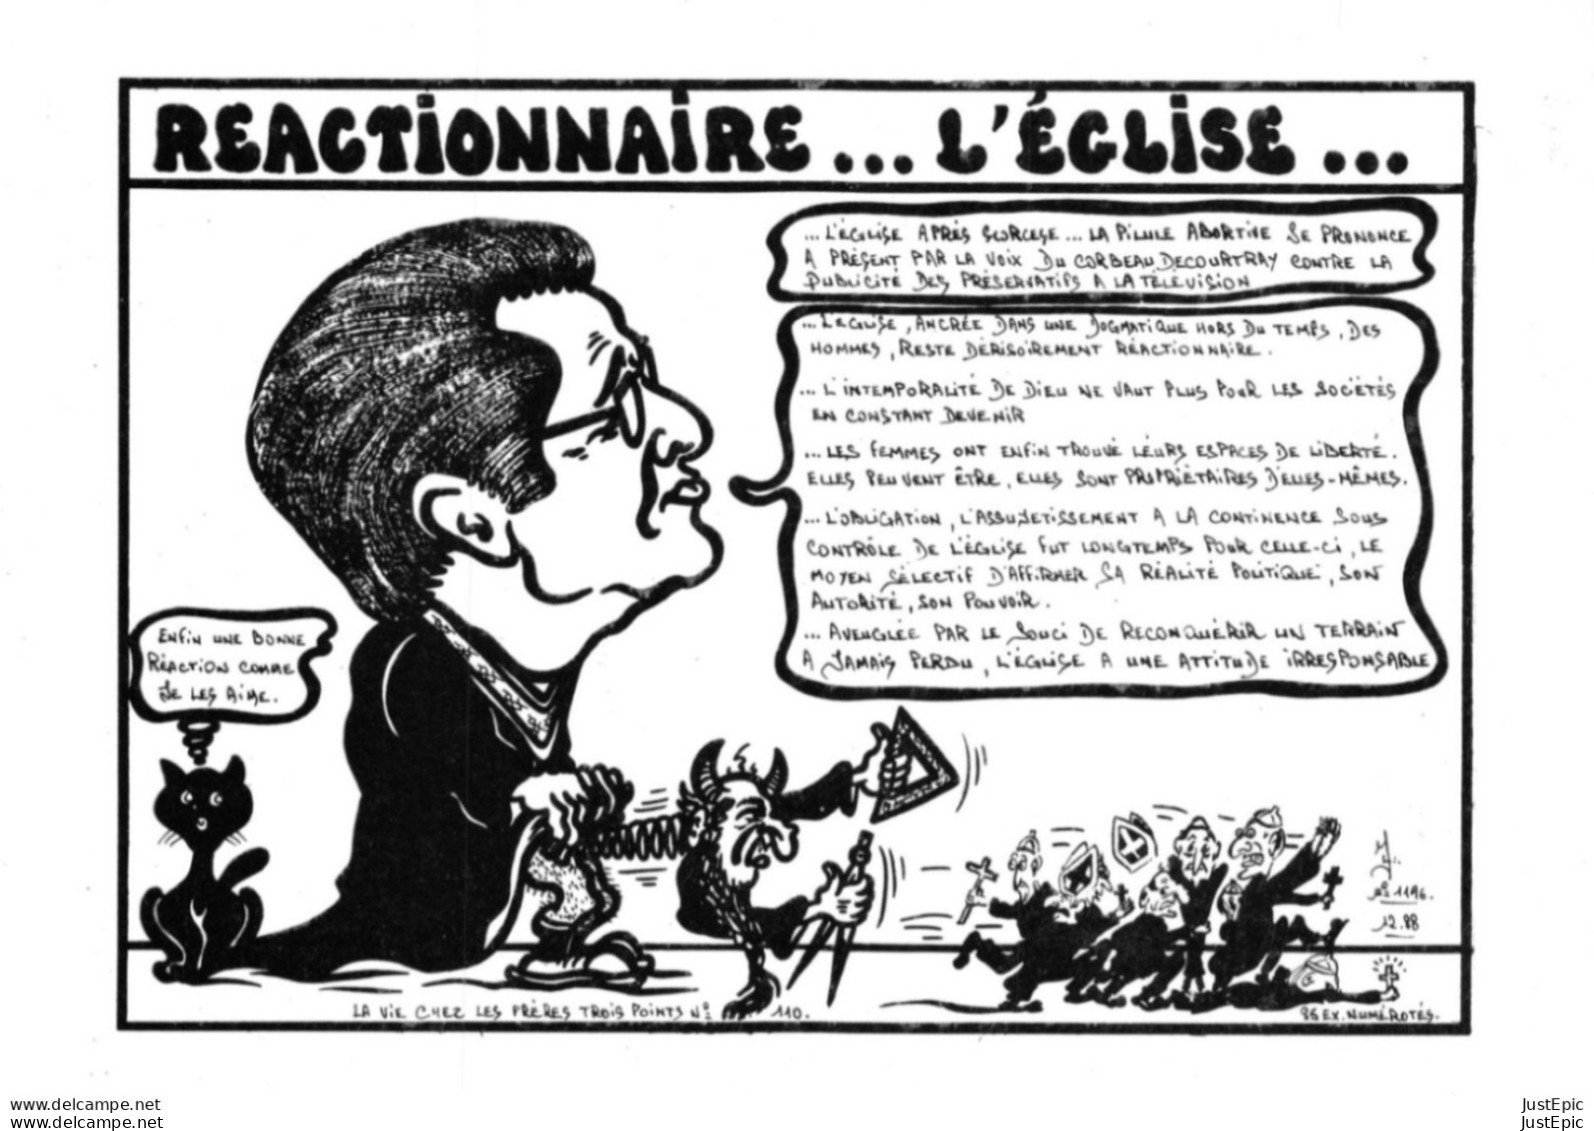 LARDIE Jihel Tirage 85 Ex.Caricature Guy PIAU Grand Maitre De La Loge De France Franc-maçonnerie Anticlérical Cpm - Philosophie & Pensées